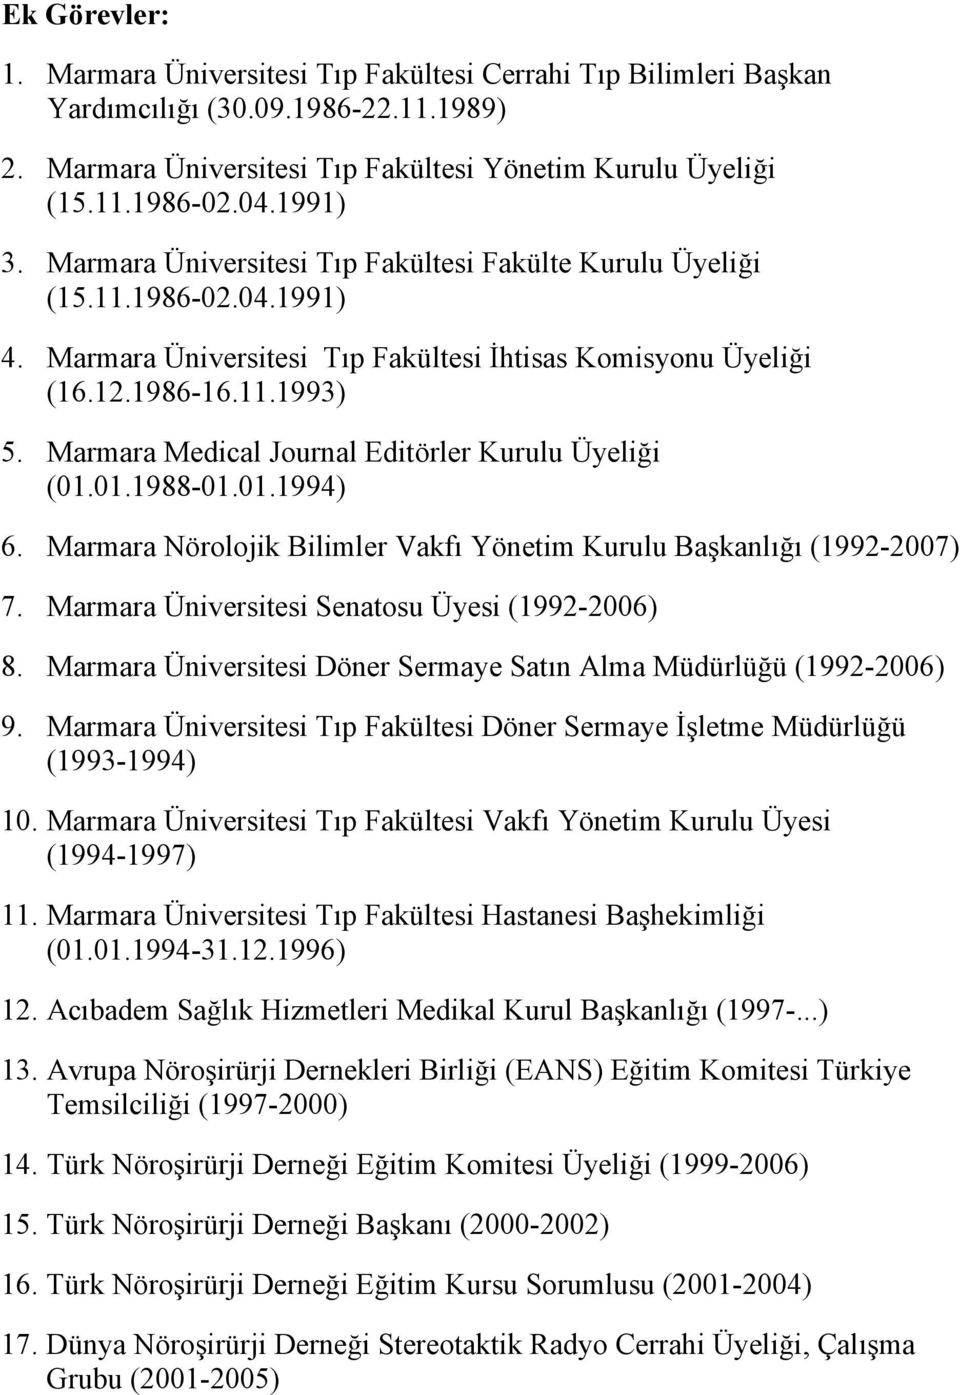 Marmara Medical Journal Editörler Kurulu Üyeliği (01.01.1988-01.01.1994) 6. Marmara Nörolojik Bilimler Vakfı Yönetim Kurulu Başkanlığı (1992-2007) 7. Marmara Üniversitesi Senatosu Üyesi (1992-2006) 8.